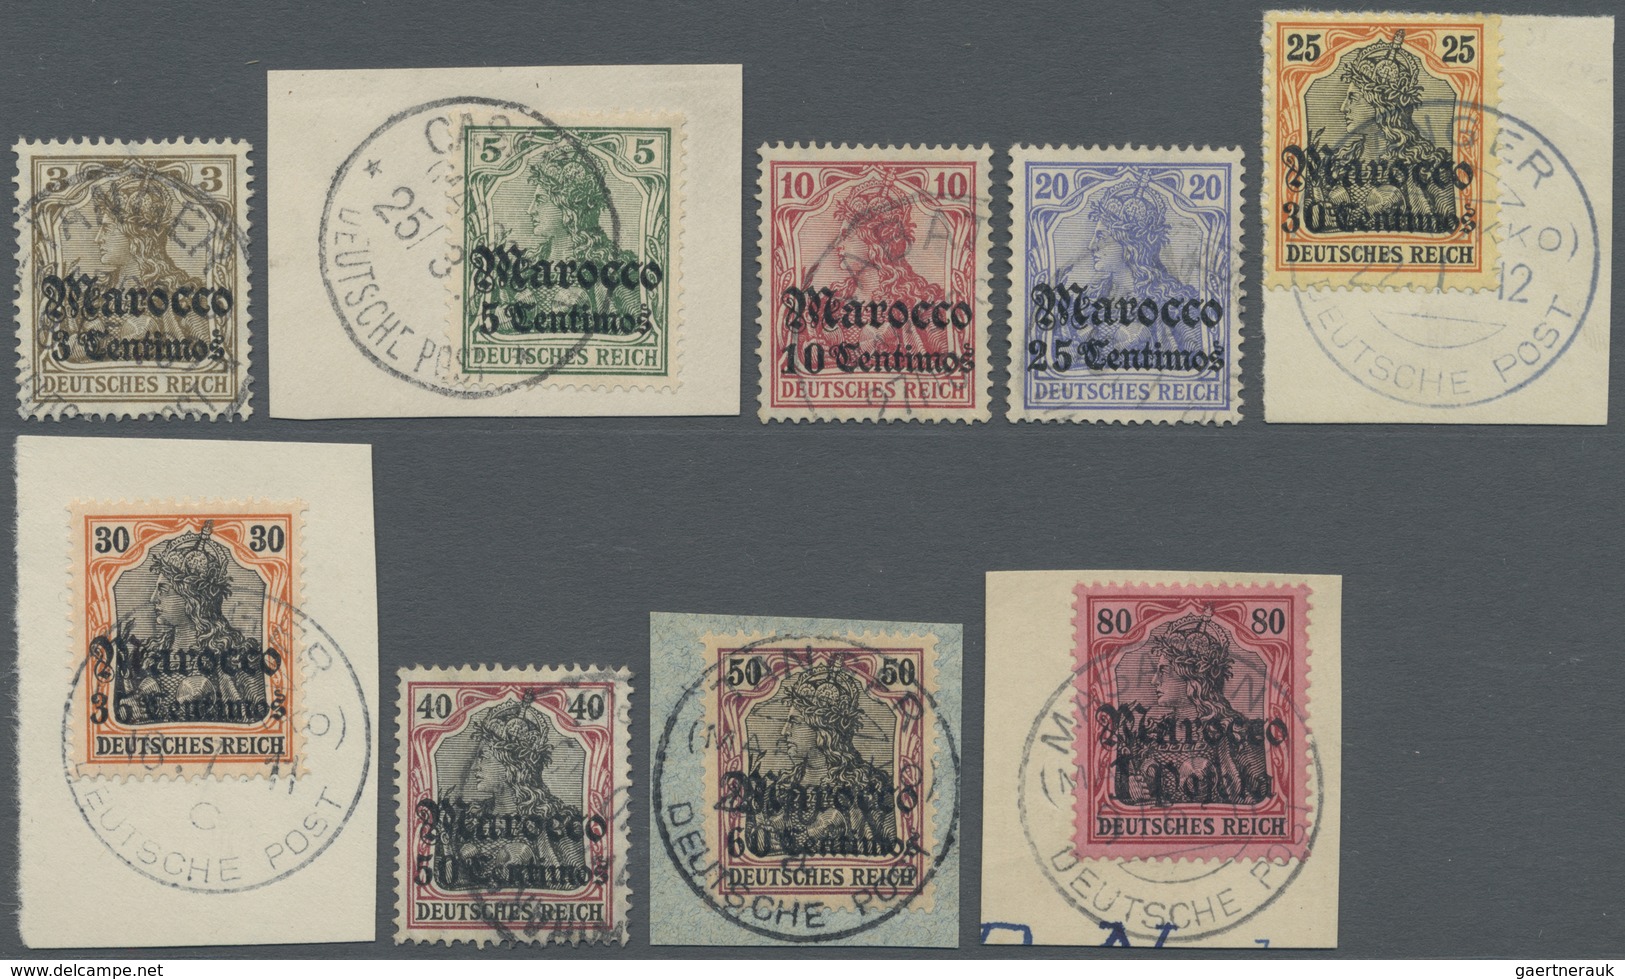 O/Brfst Deutsche Post In Marokko: 1906, Freimarken Germania Mit Wasserzeichen Und Überdruck "Marocco" Sauber - Deutsche Post In Marokko